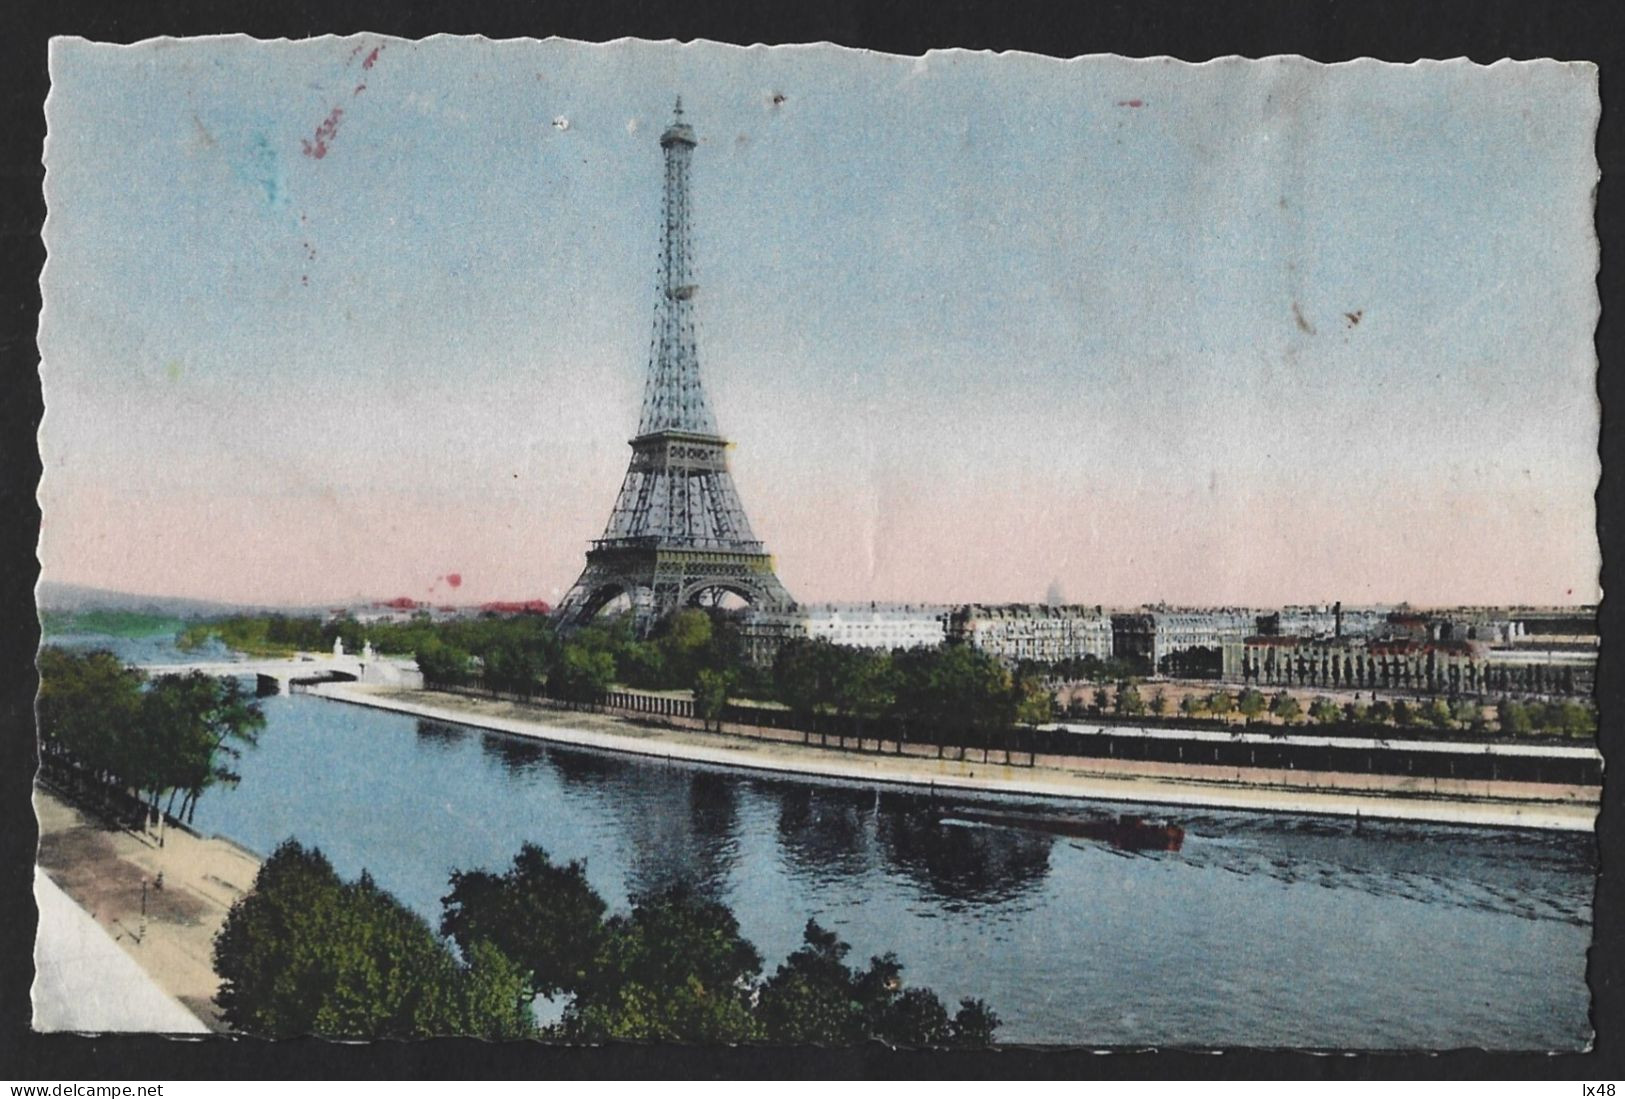 Stationery Postcard Of The Eiffel Tower From 1952 With An Old Paris Vignette.Carte Postale De Papeterie De La Tour Eiffe - Hostelería - Horesca